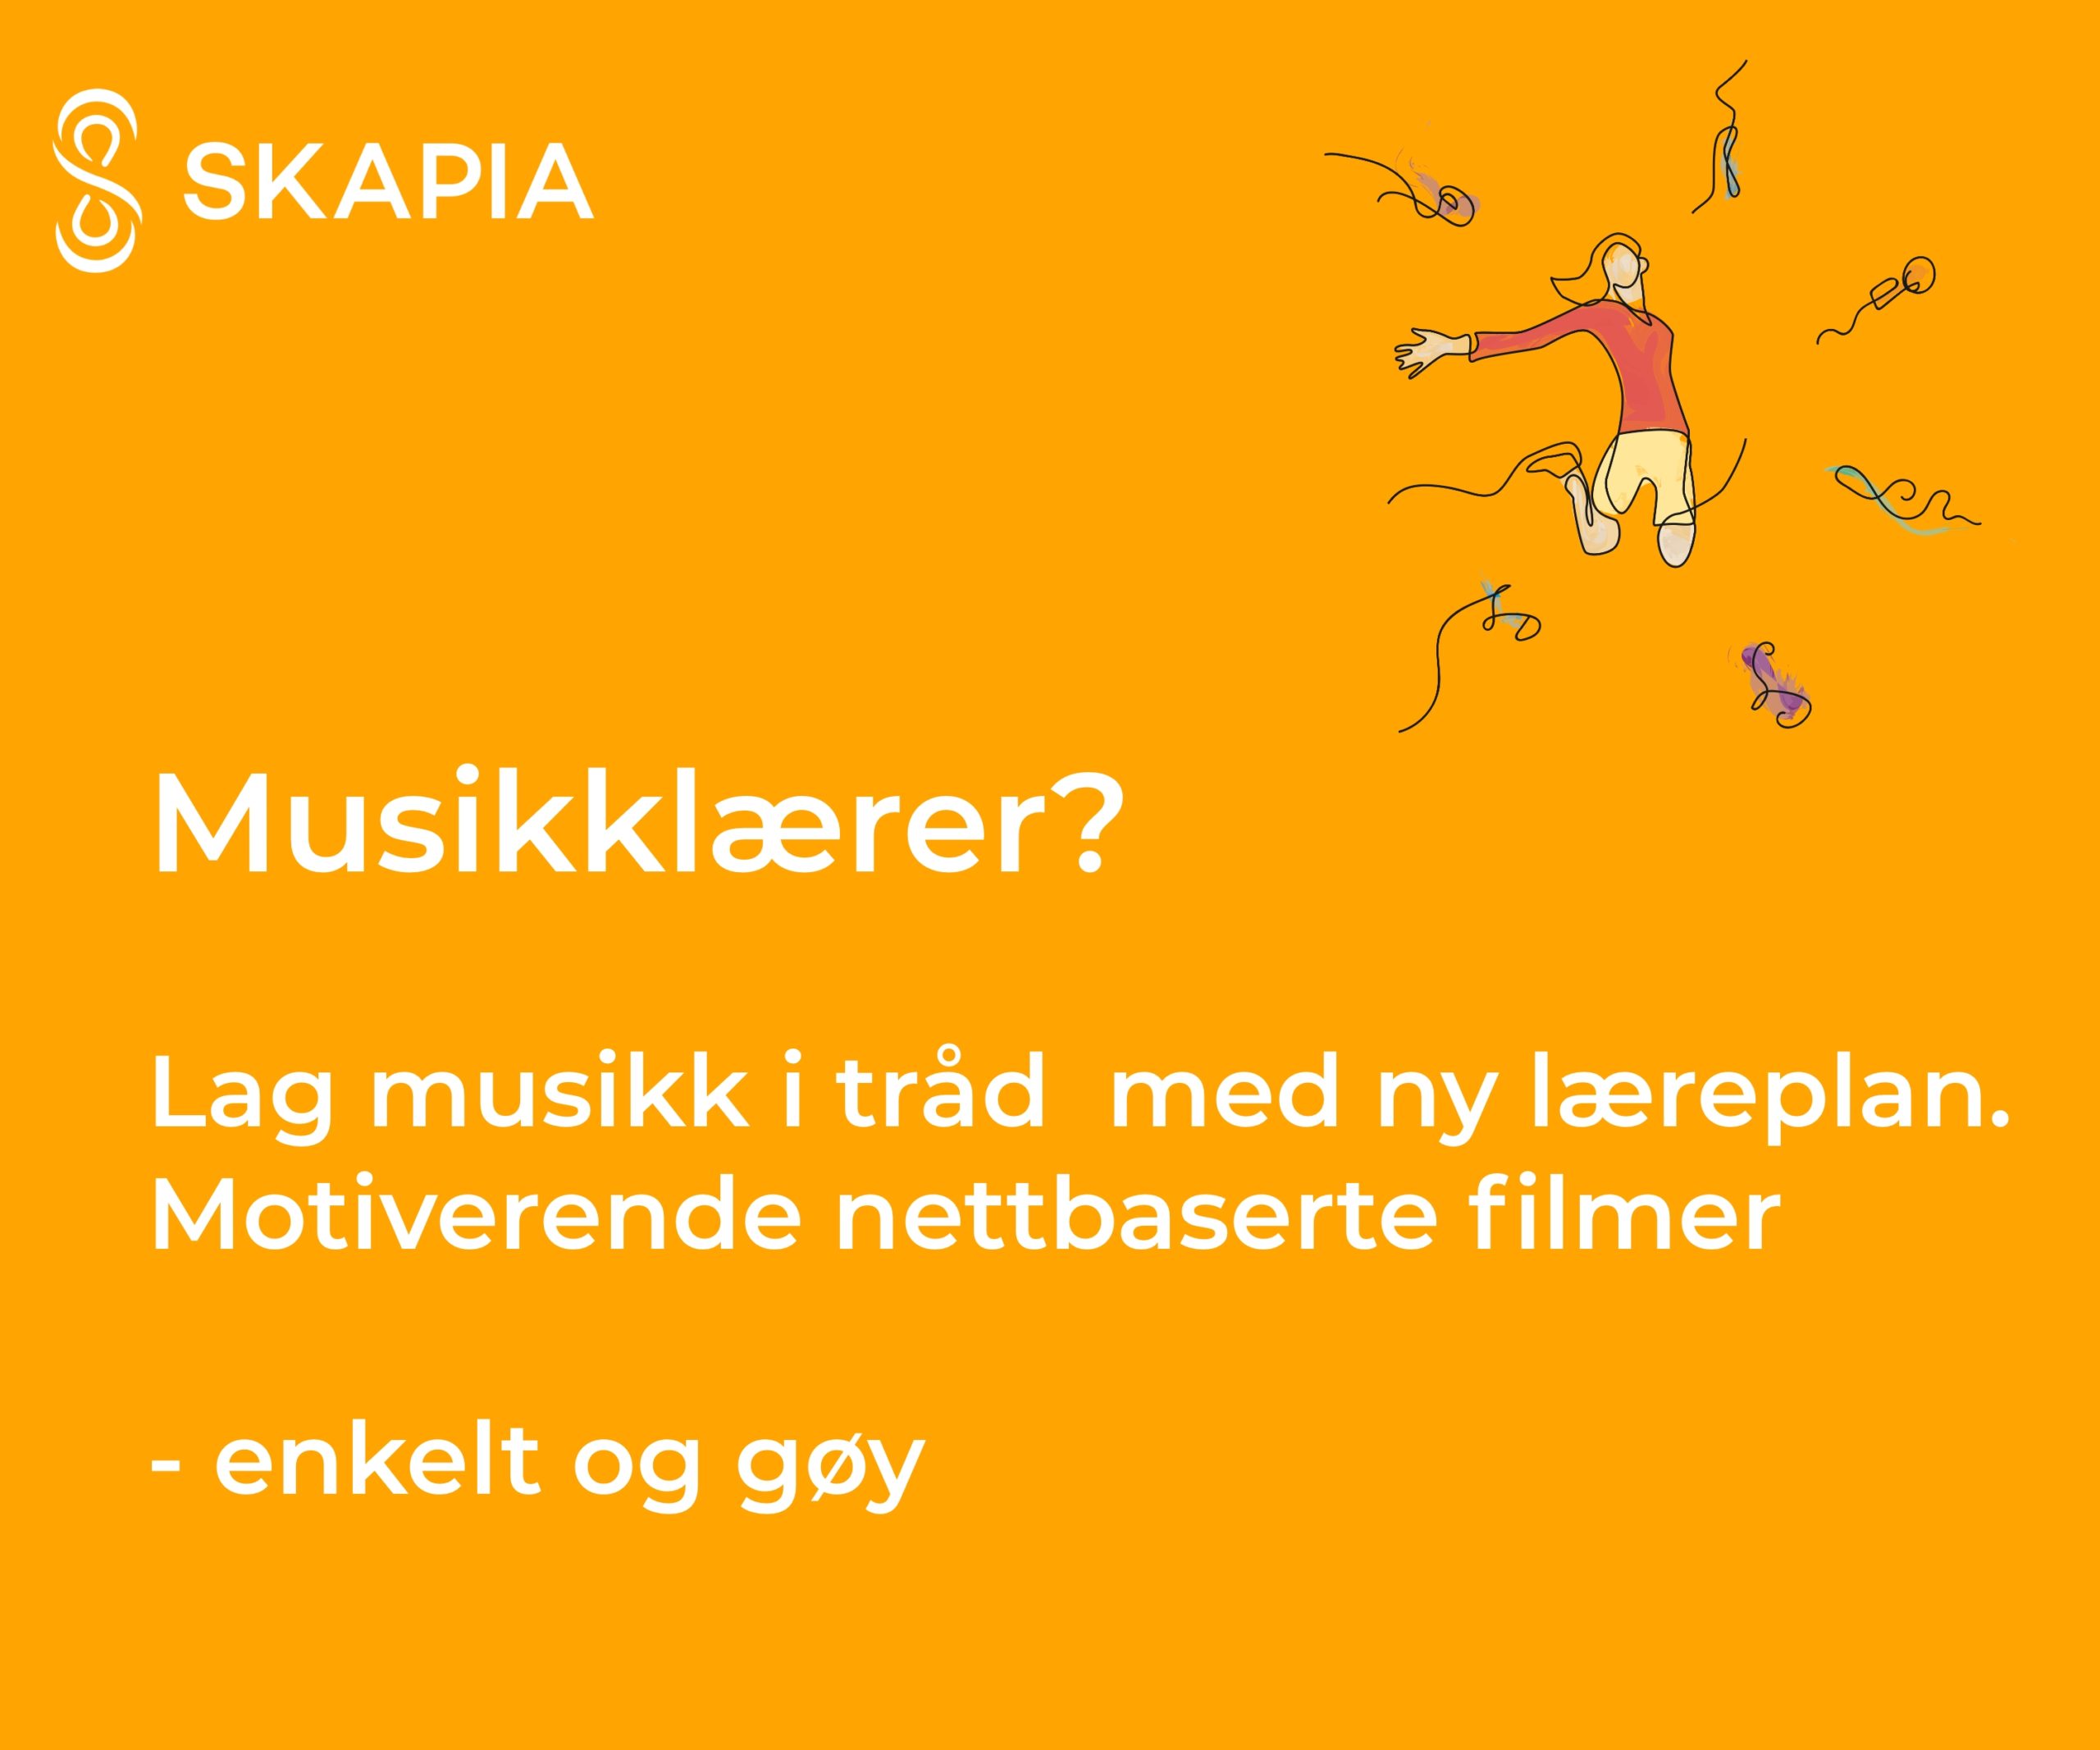 Annonse for Skapia